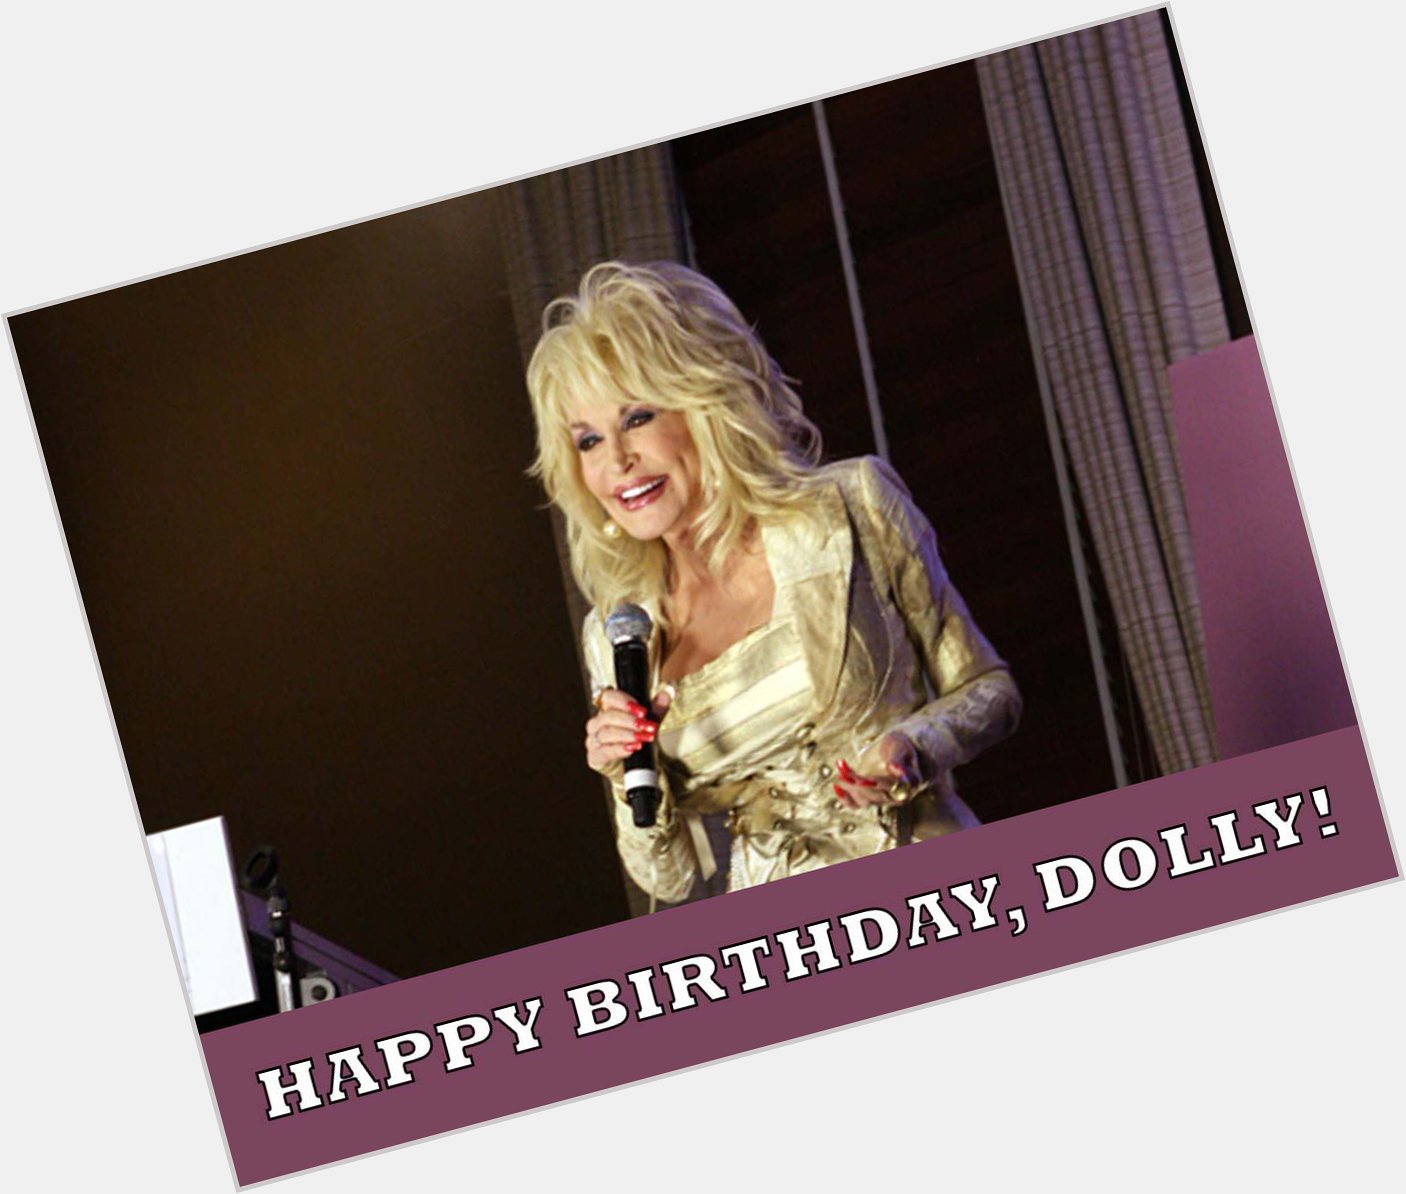 HAPPY BIRTHDAY, DOLLY PARTON! Dolly turns 72 today. 